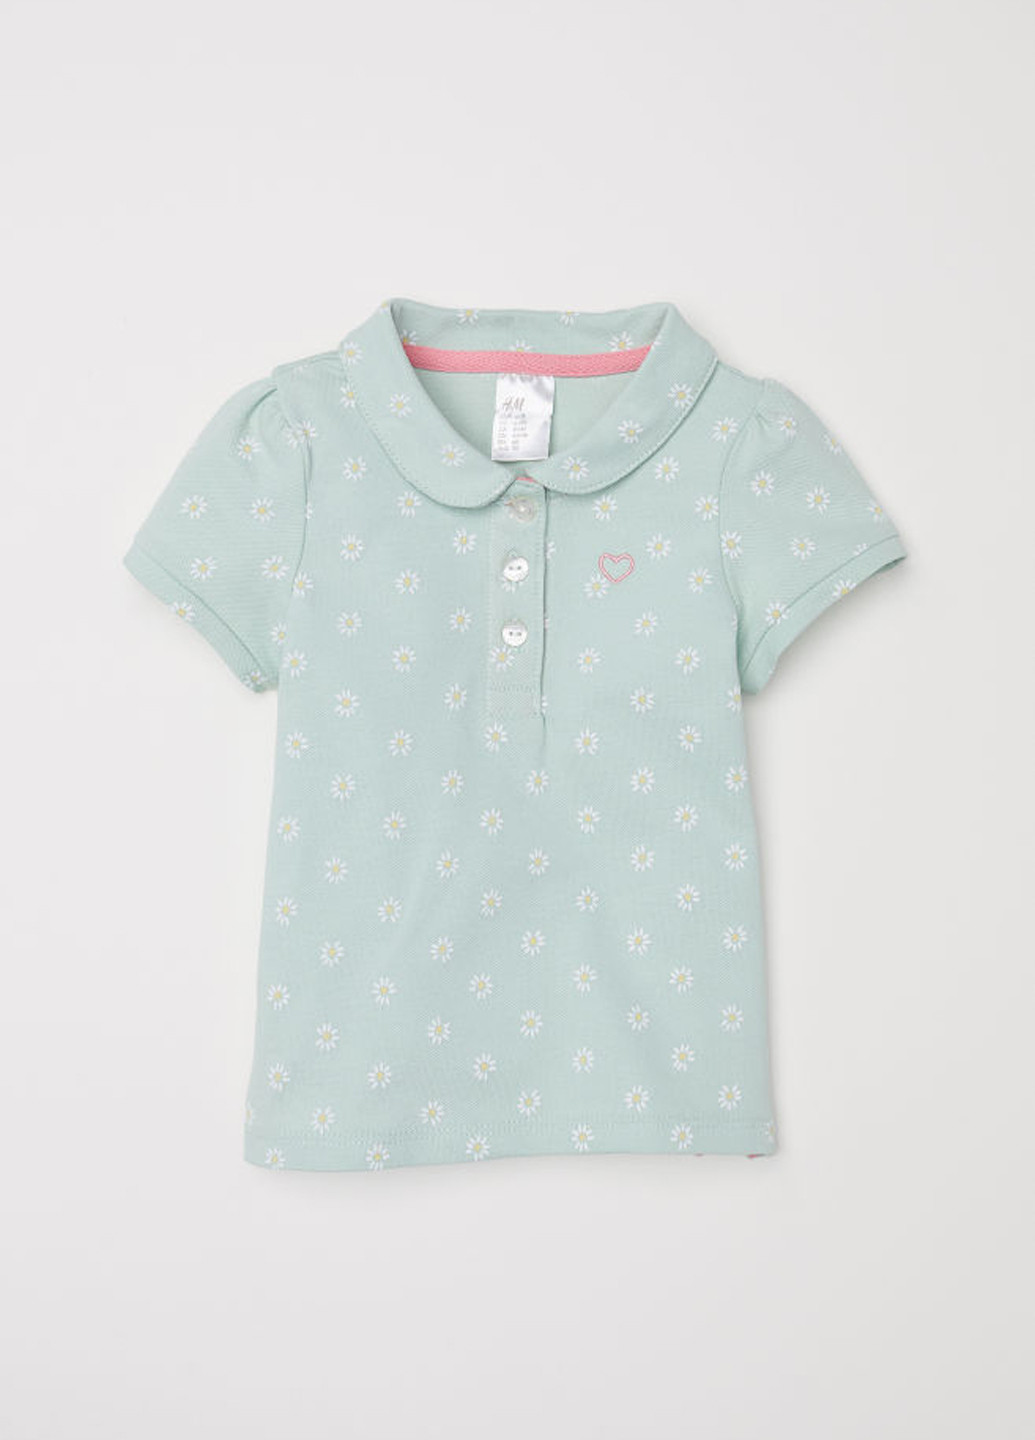 Мятная детская футболка-поло для девочки H&M с цветочным принтом